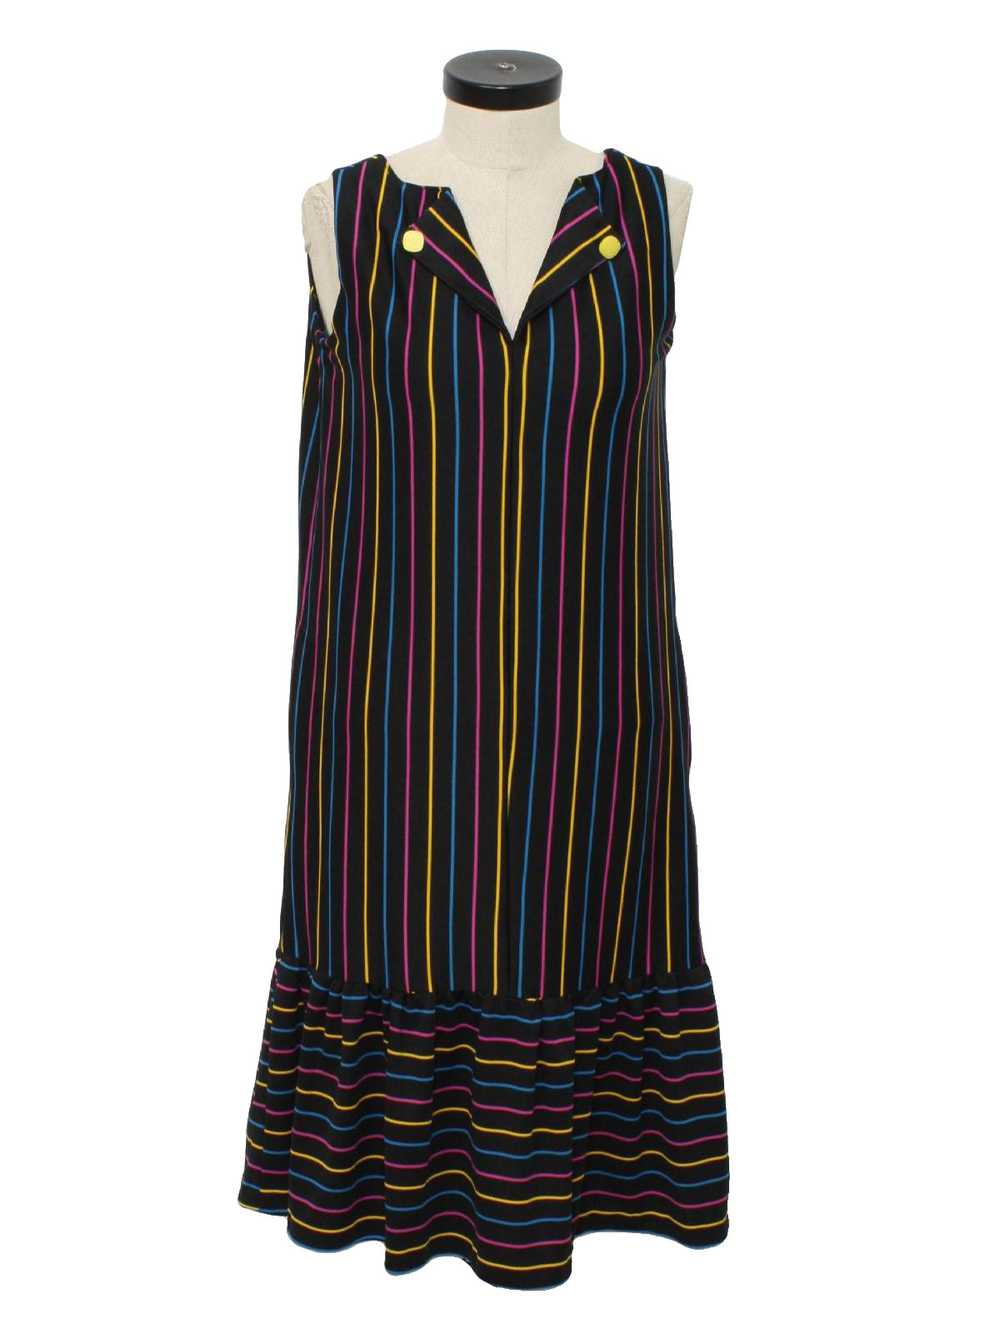 1970's Mod Dress - image 1